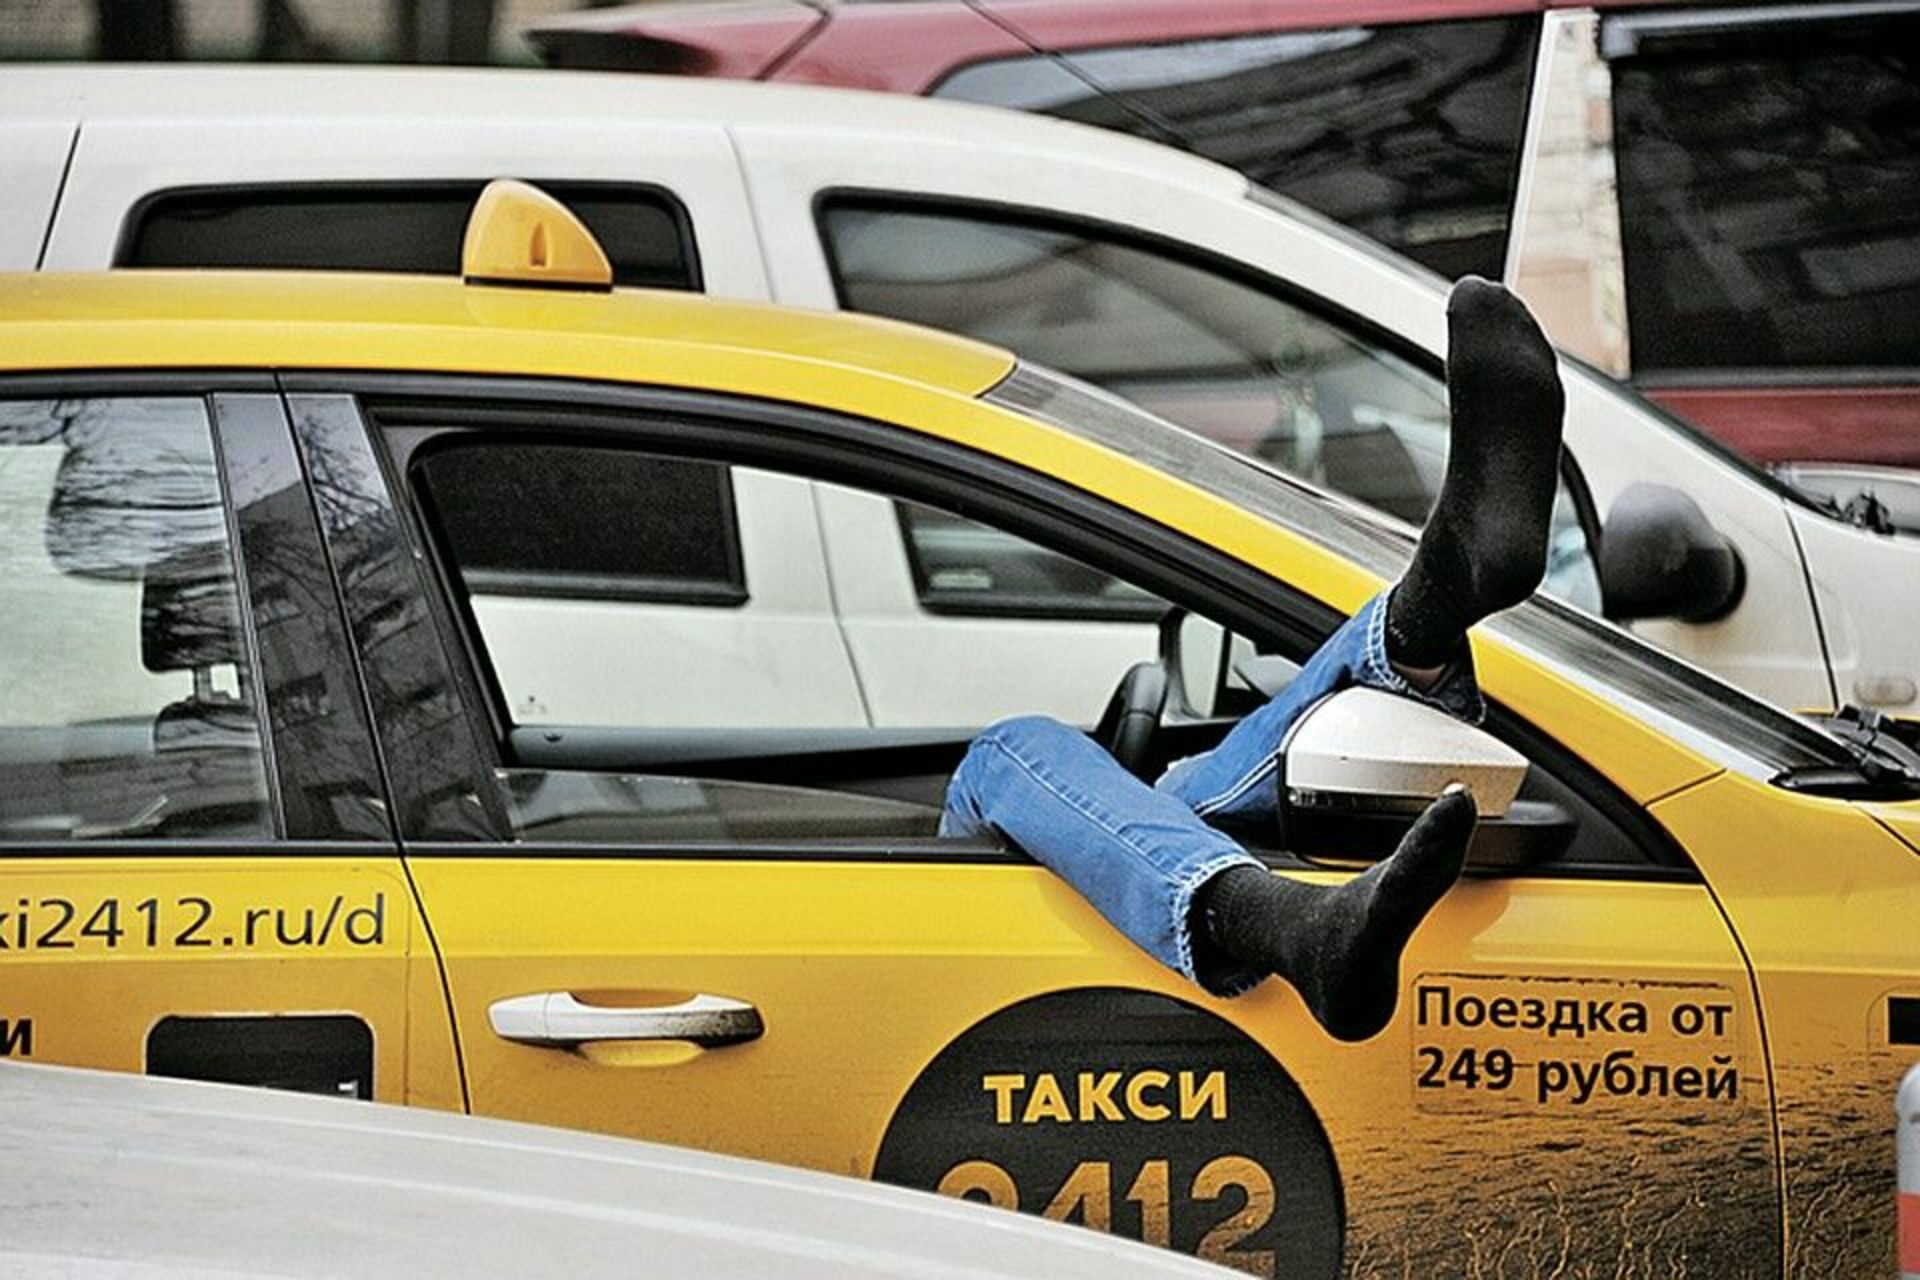 Таксистам запретили. Такси. Водитель такси. Водитель такси в машине. Сонный таксист.